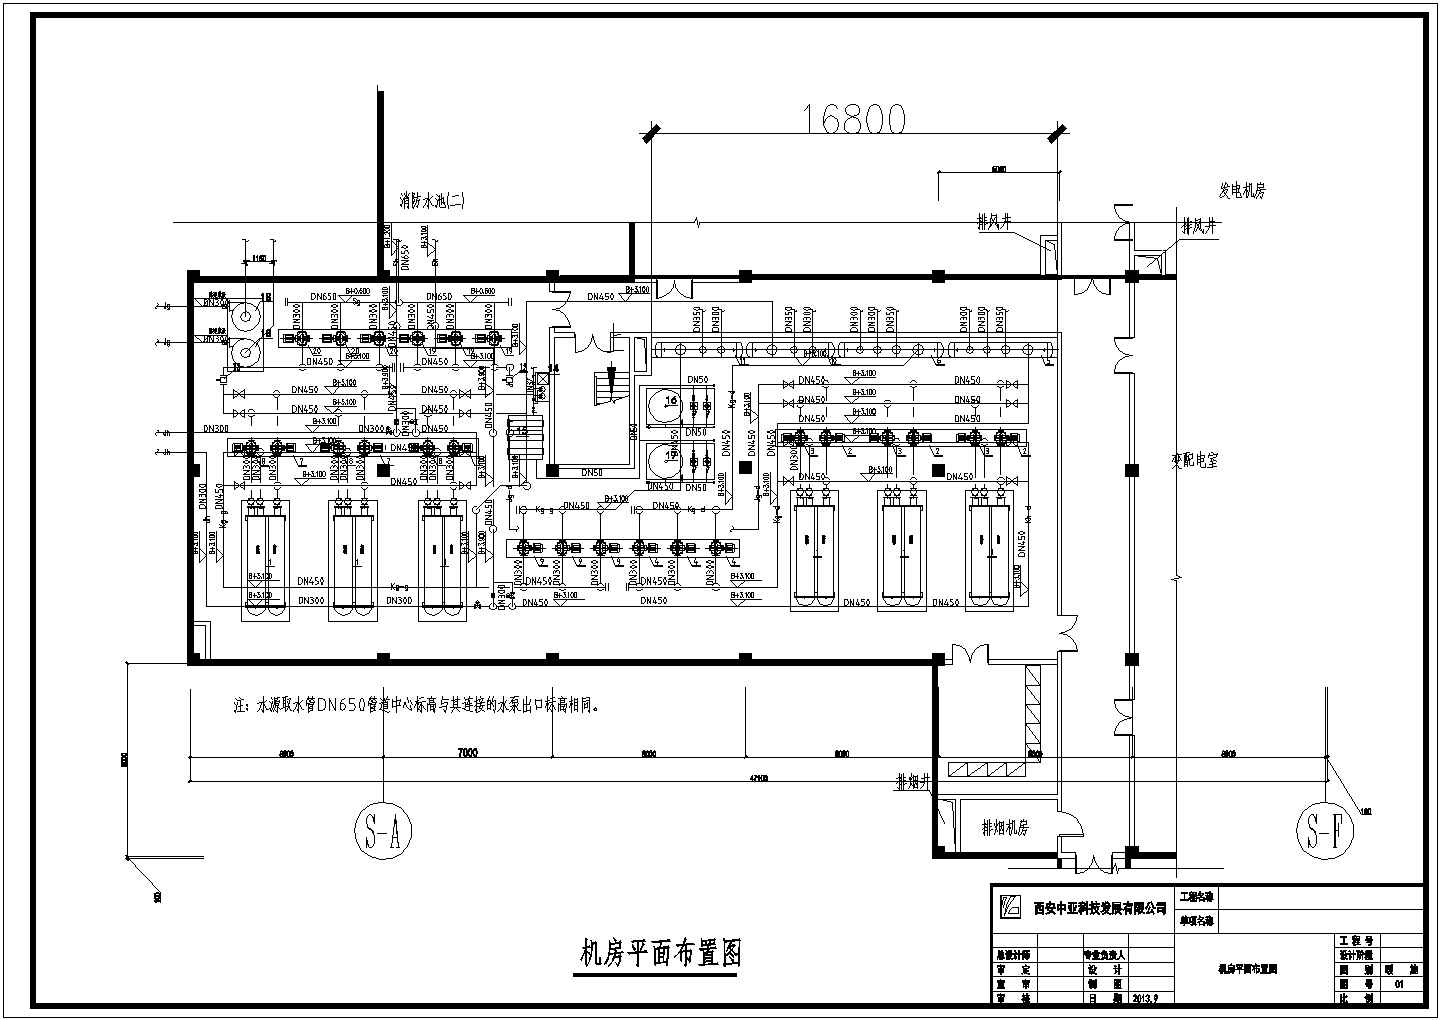 蔡家坡某大型社区六台水源热泵机组机房设计图